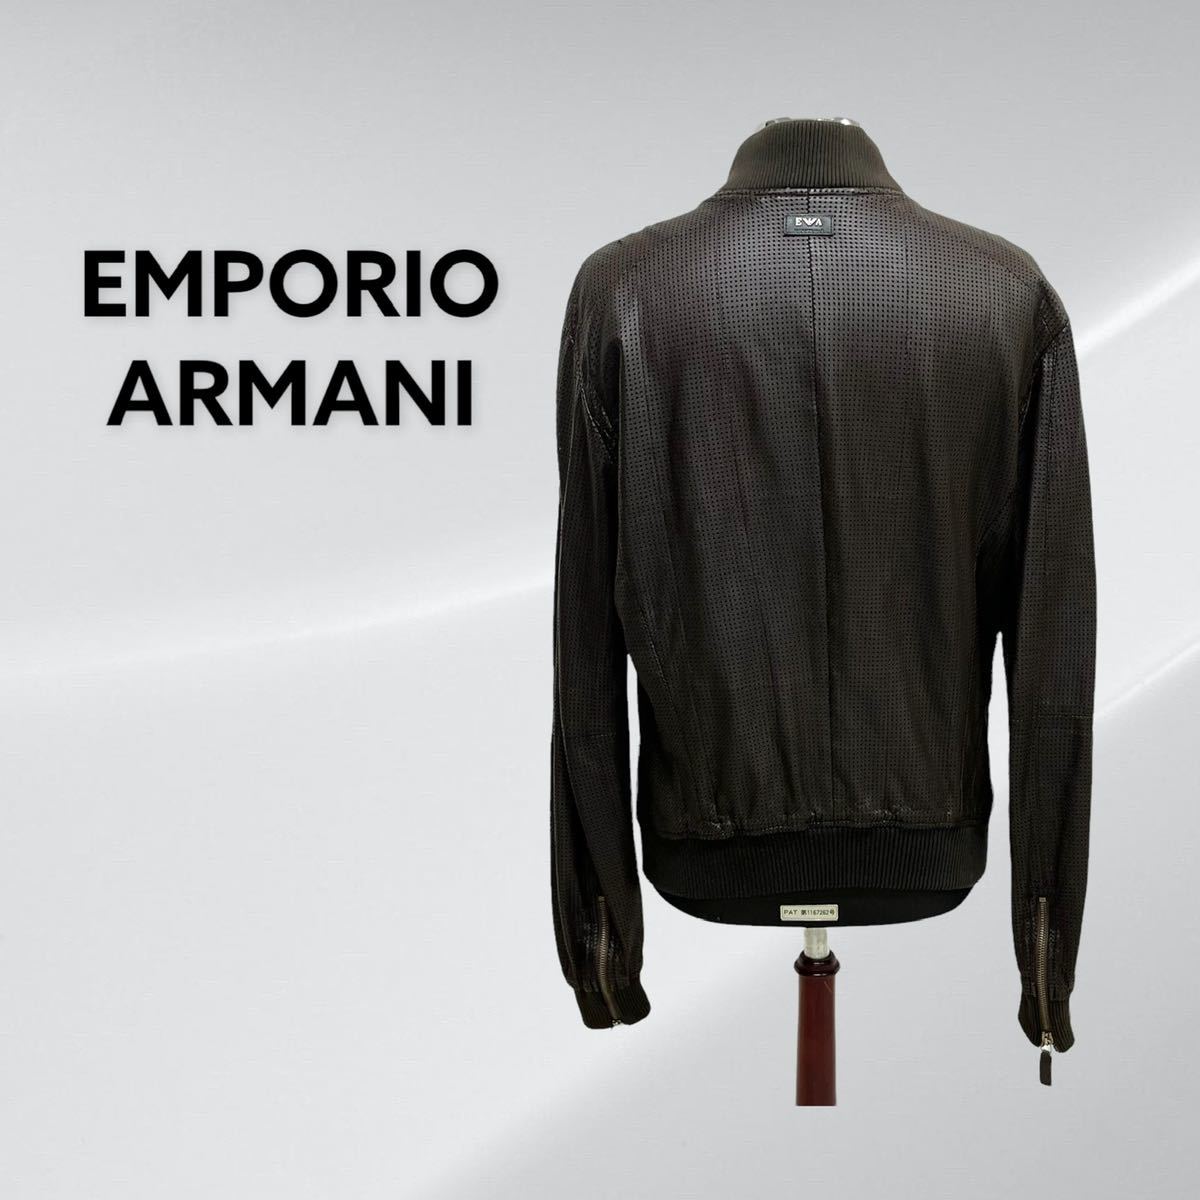 EMPORIO ARMANI エンポリオ アルマーニ ラムスキン 羊革 パンチング 